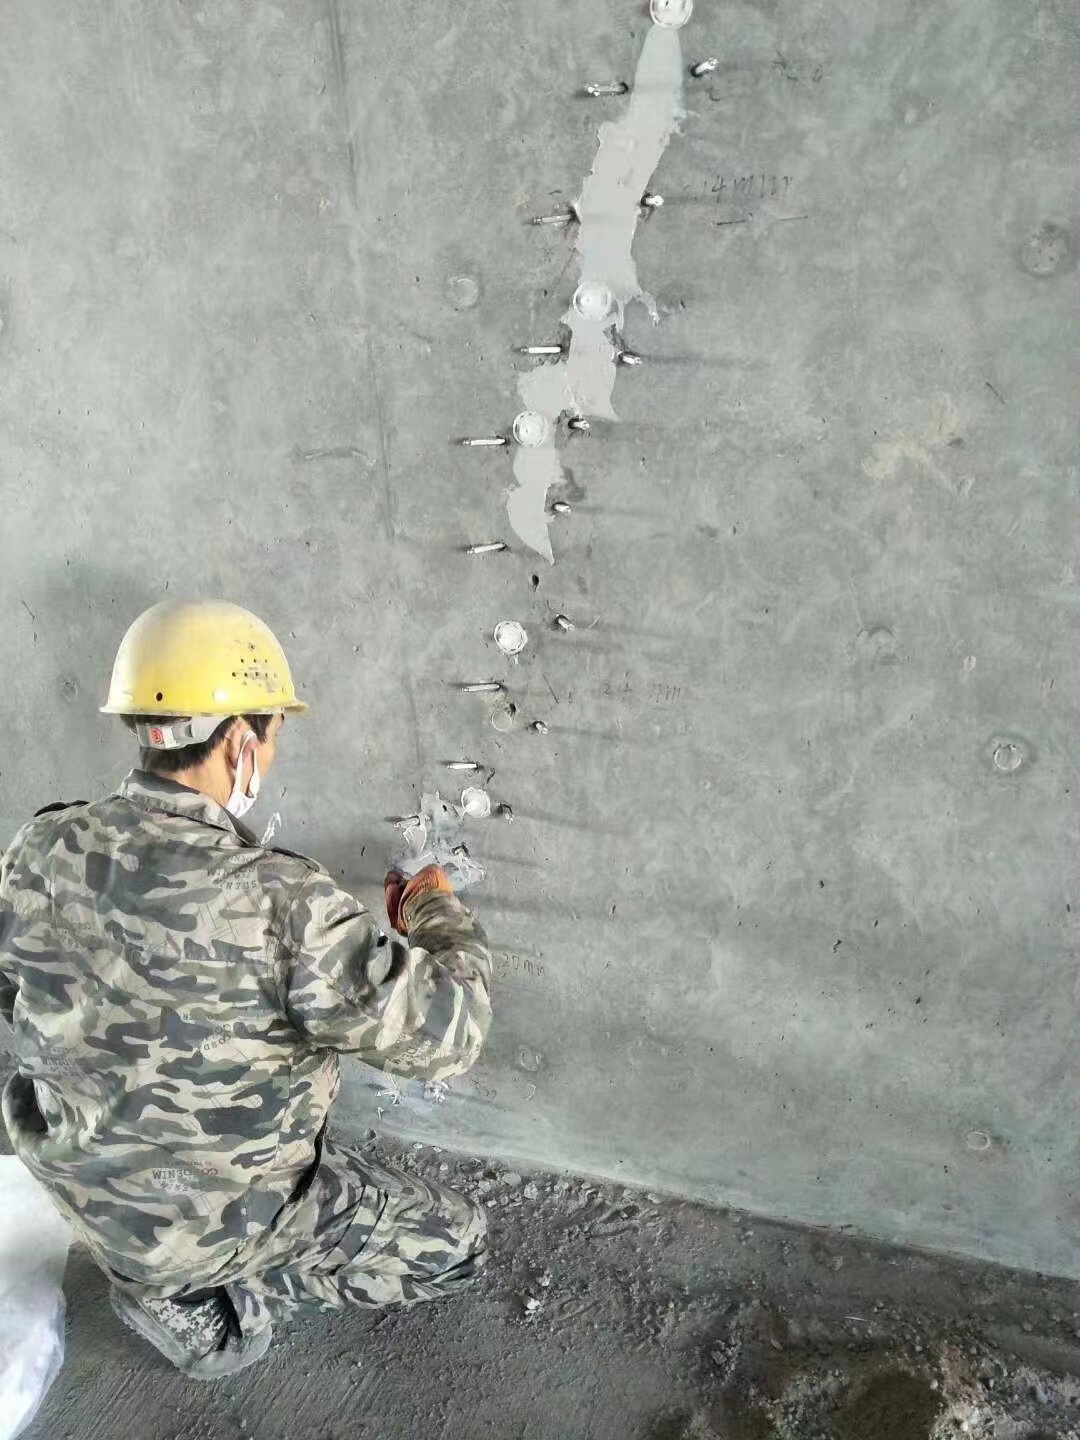 措勤混凝土楼板裂缝加固施工的方案